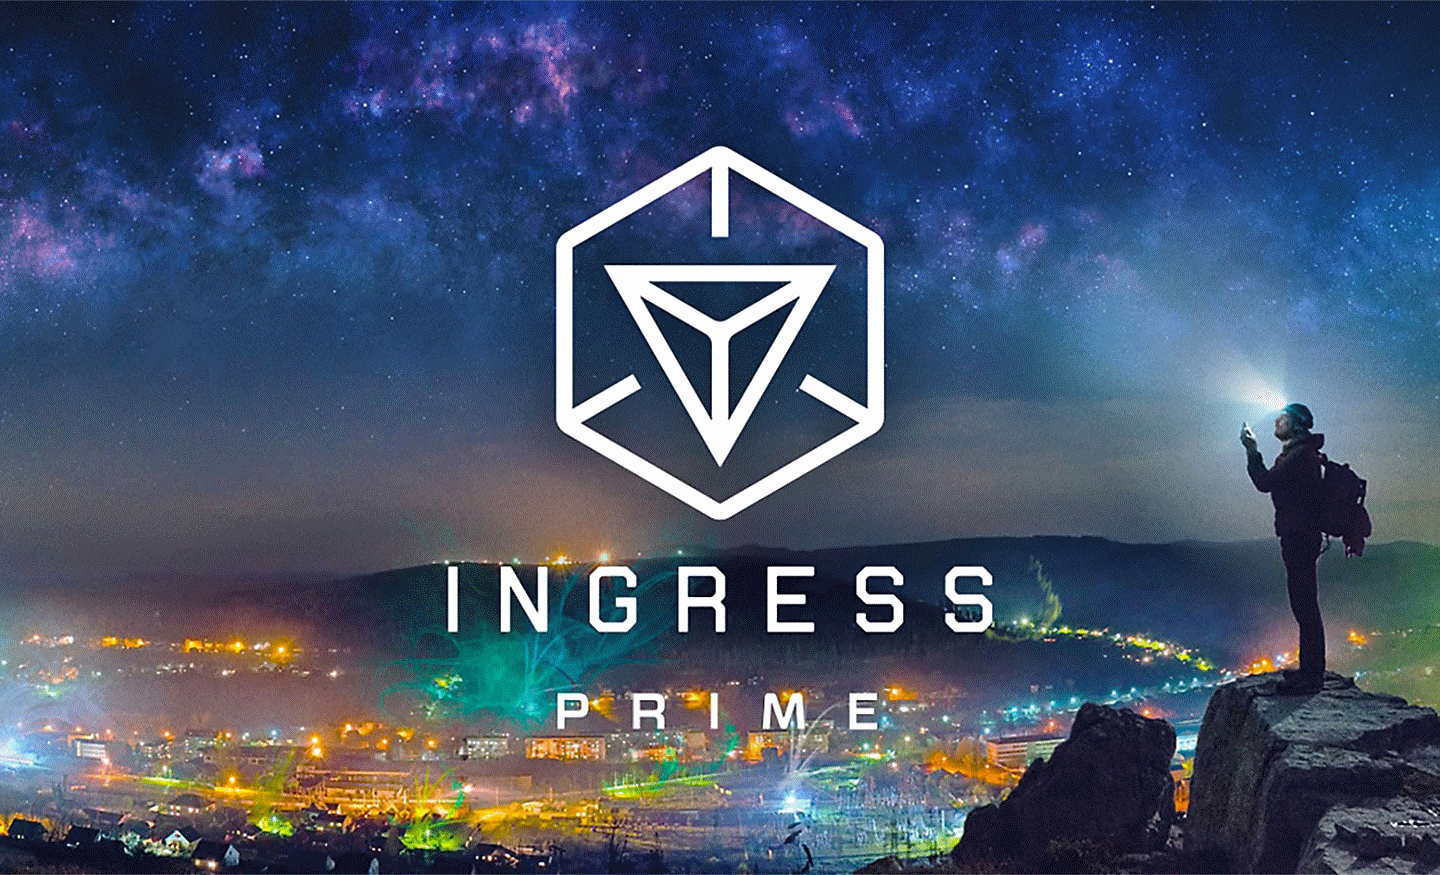 Hình ảnh thành phố nhìn từ trên cao với logo Ingress Prime hiện lên chính giữa